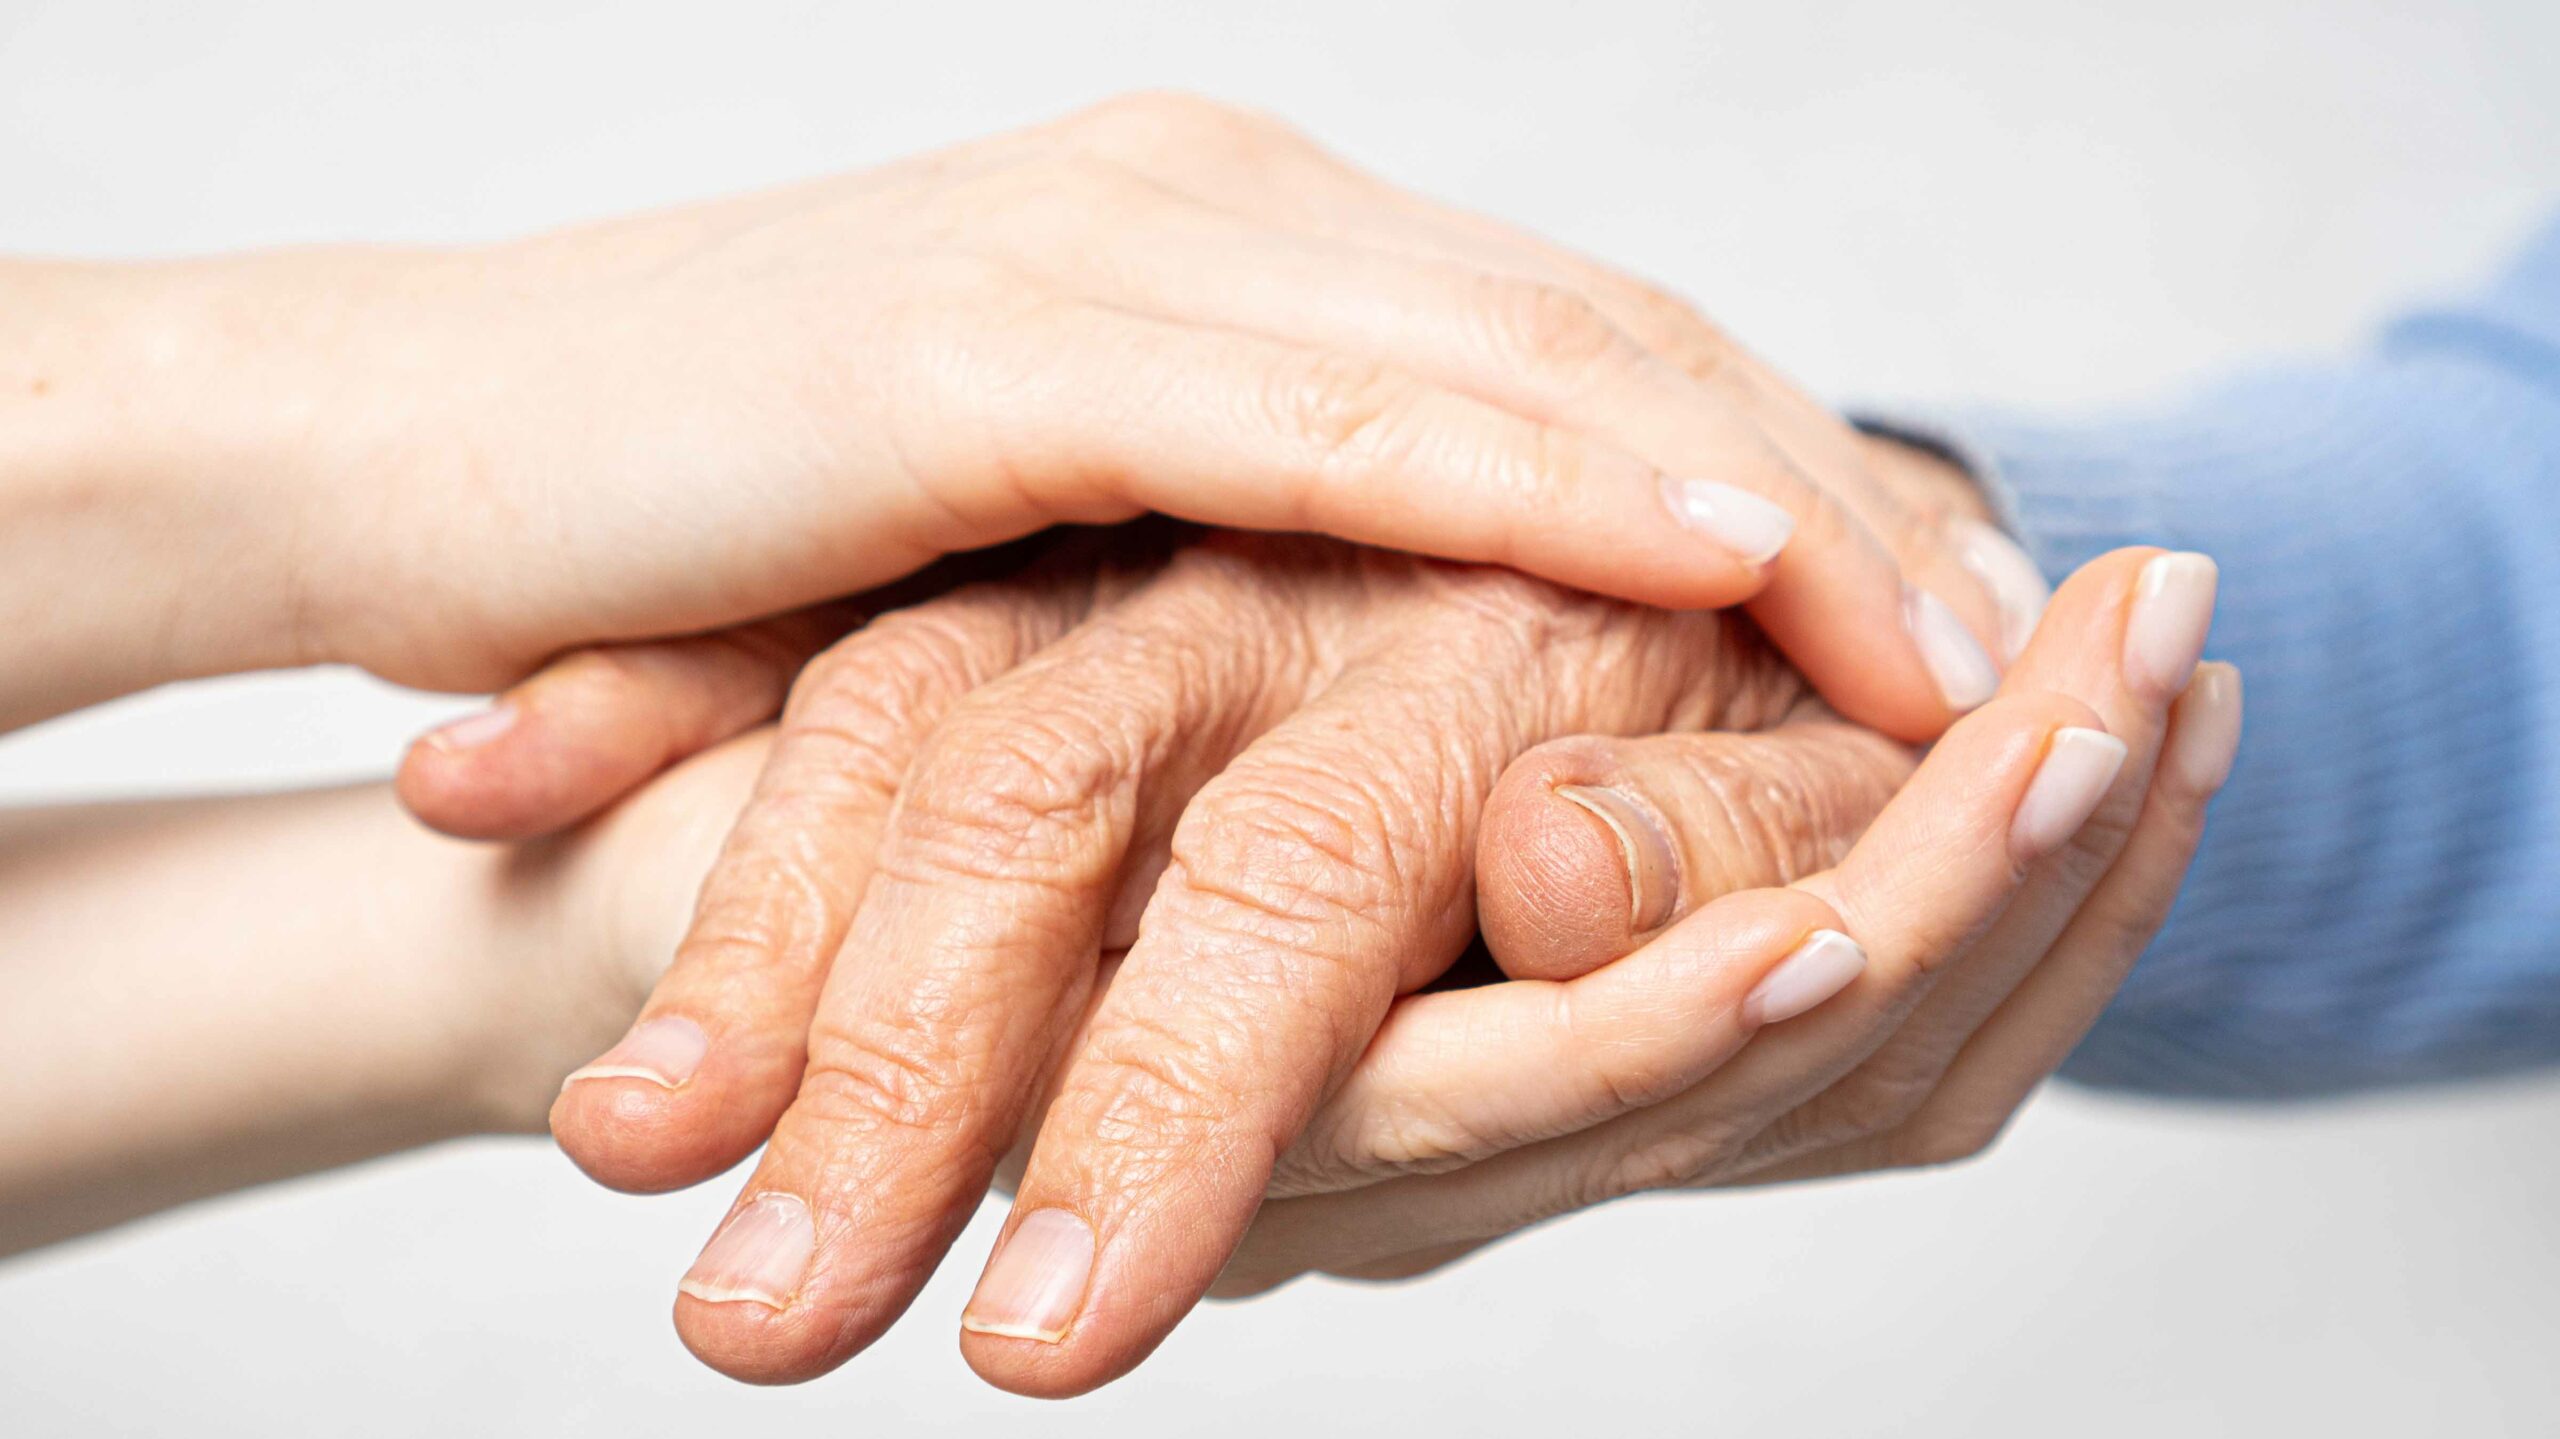 Caregiver Aware proporciona controles de bienestar para personas mayores sin interrumpir su privacidad